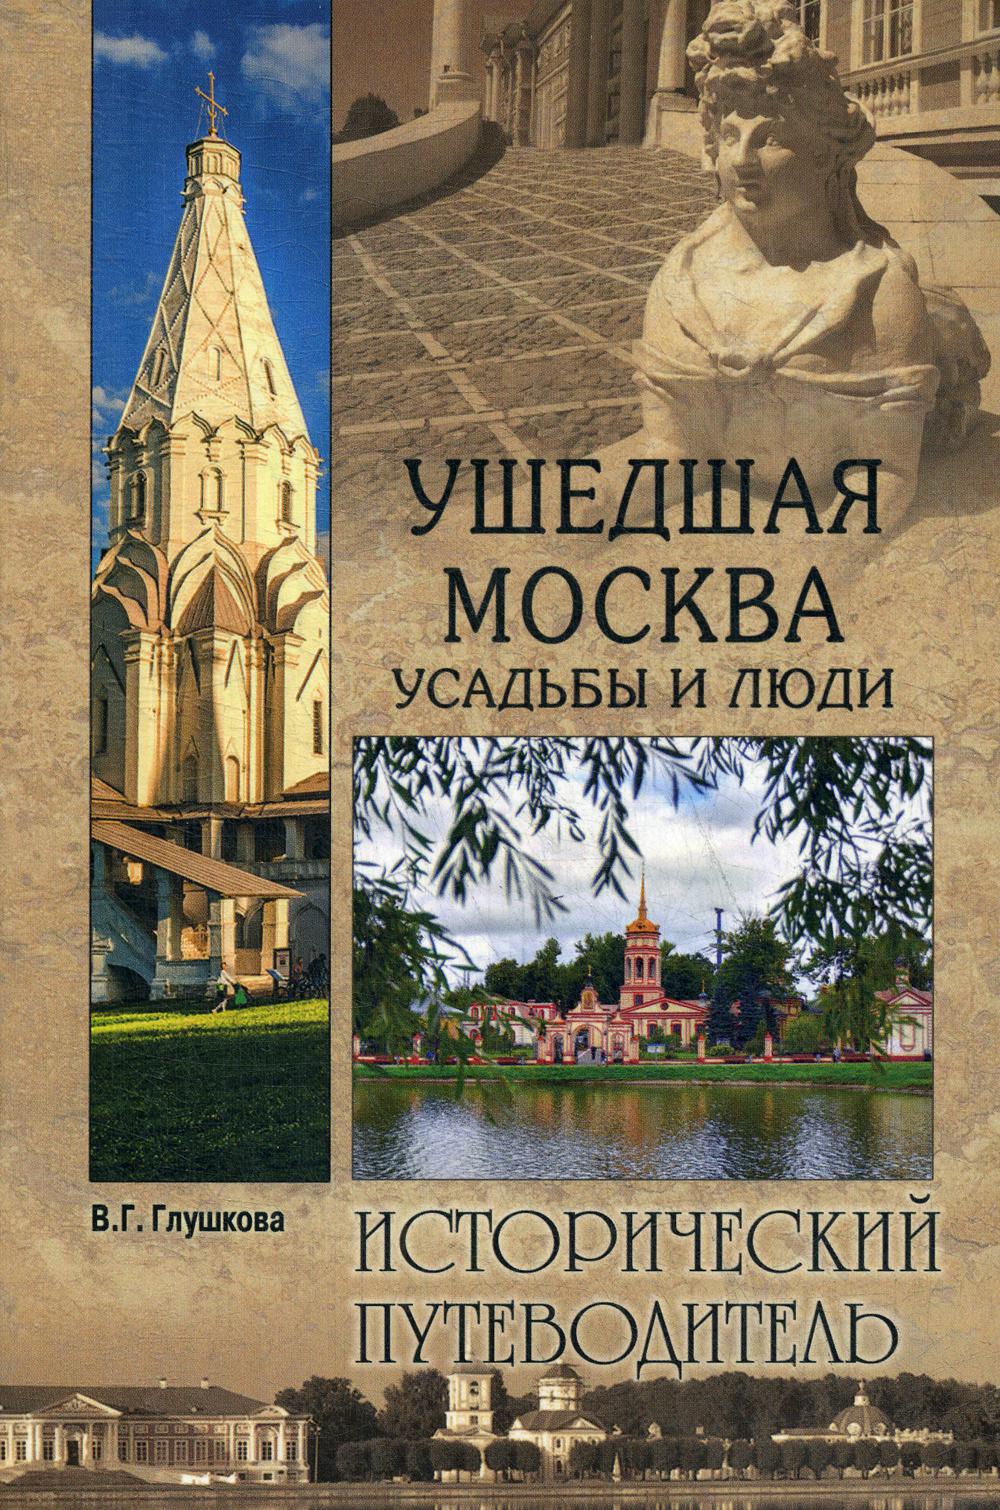 

Книга Ушедшая Москва. Усадьбы и люди